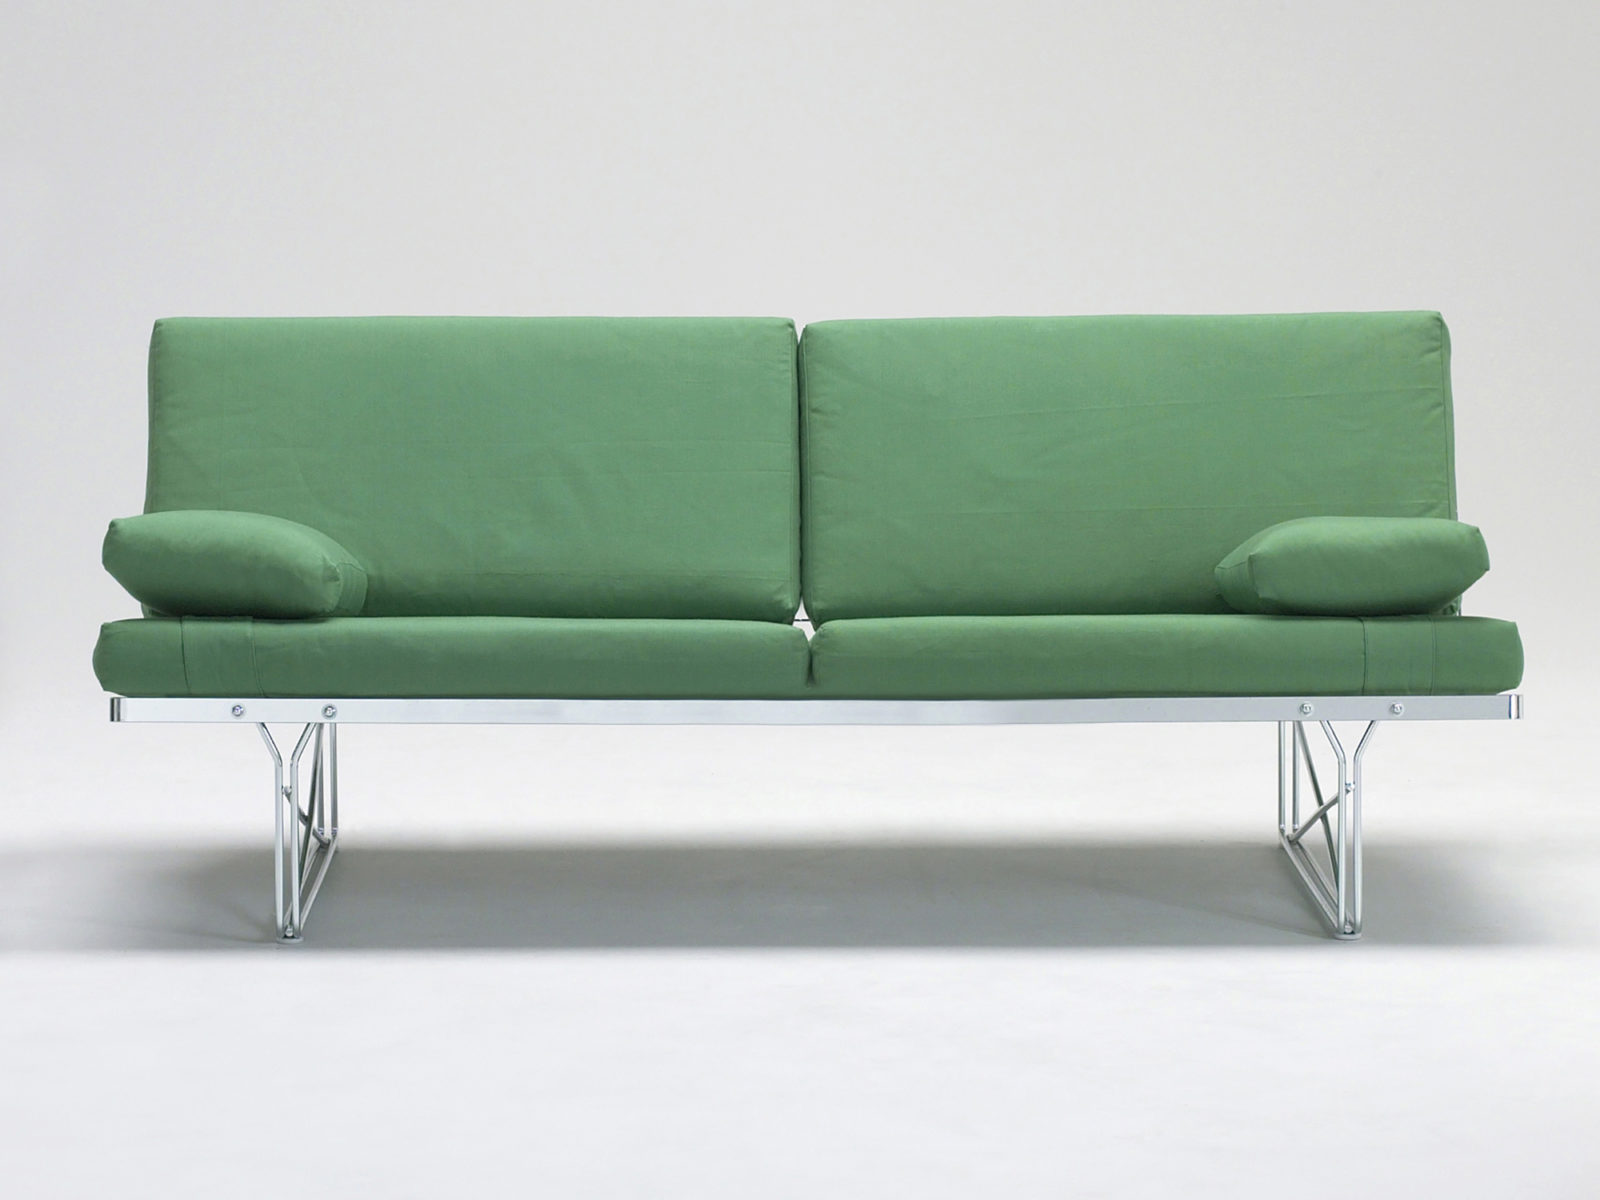 Soffa tillverkad av tjock metalltråd, med grön klädsel.